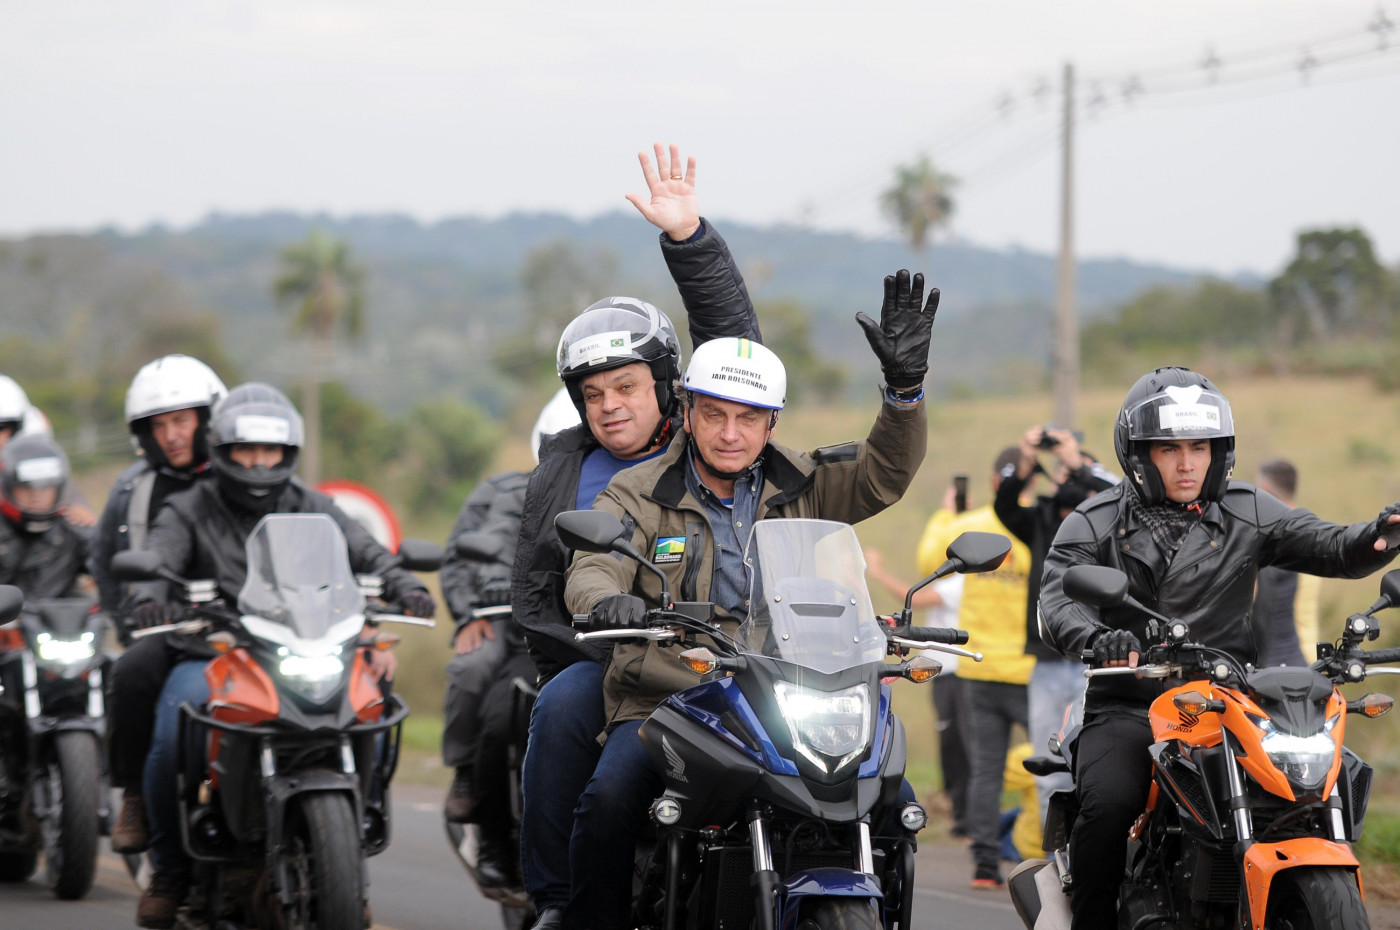 Presidente Jair Bolsonaro em cima de moto com o prefeito de Chapecó. Eles usam capacetes e fazem um sinal de 